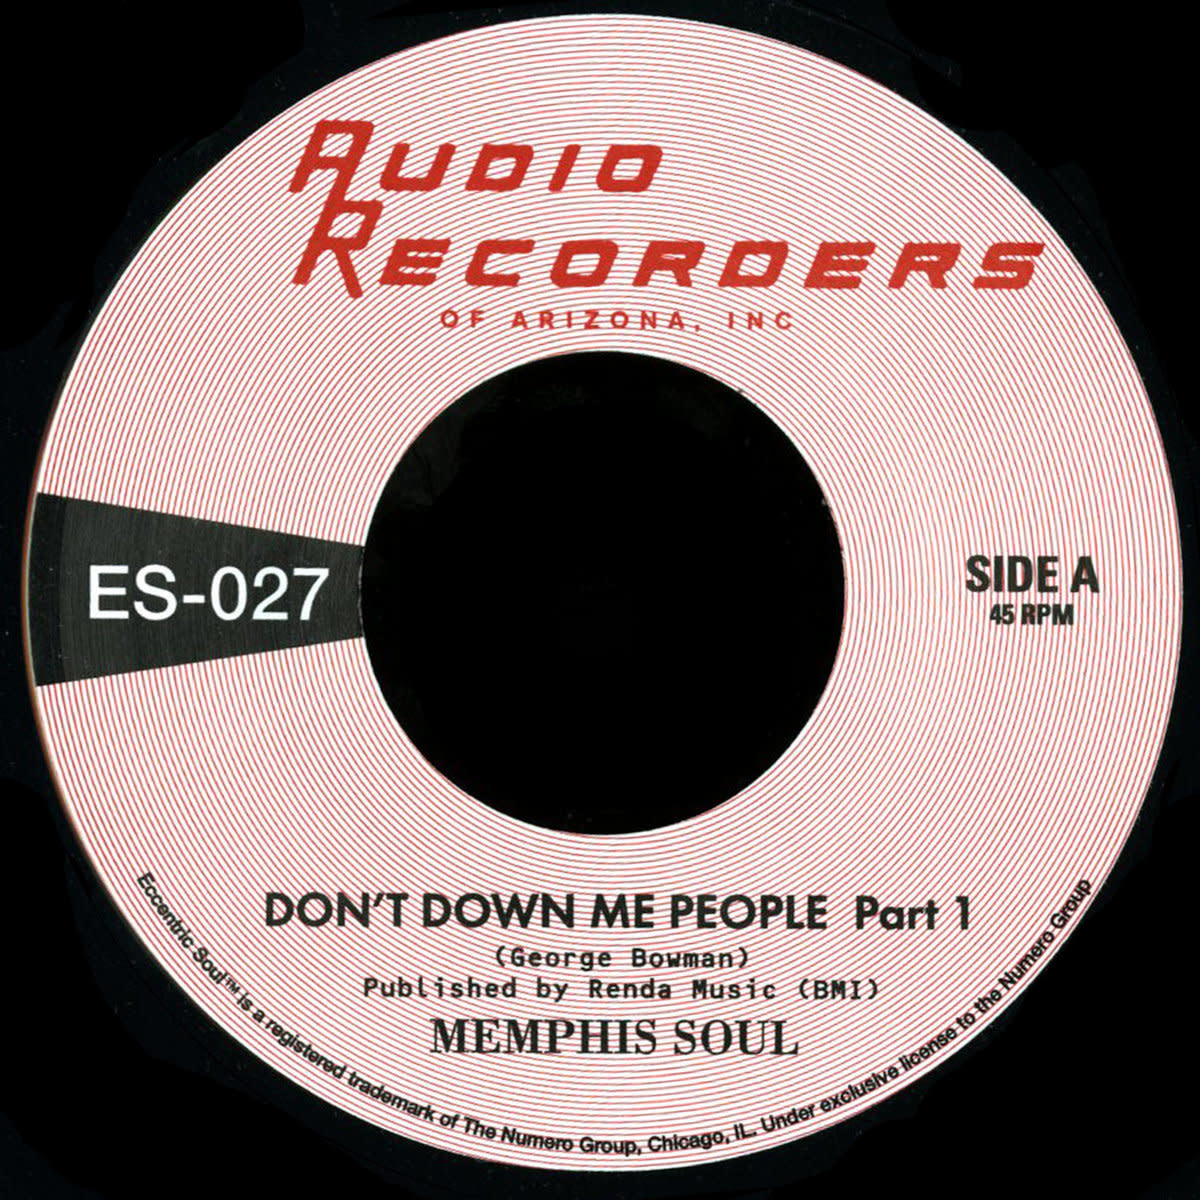 Numero Group Memphis Soul - Don't Down Me People Pt. 1 b/w Pt. 2